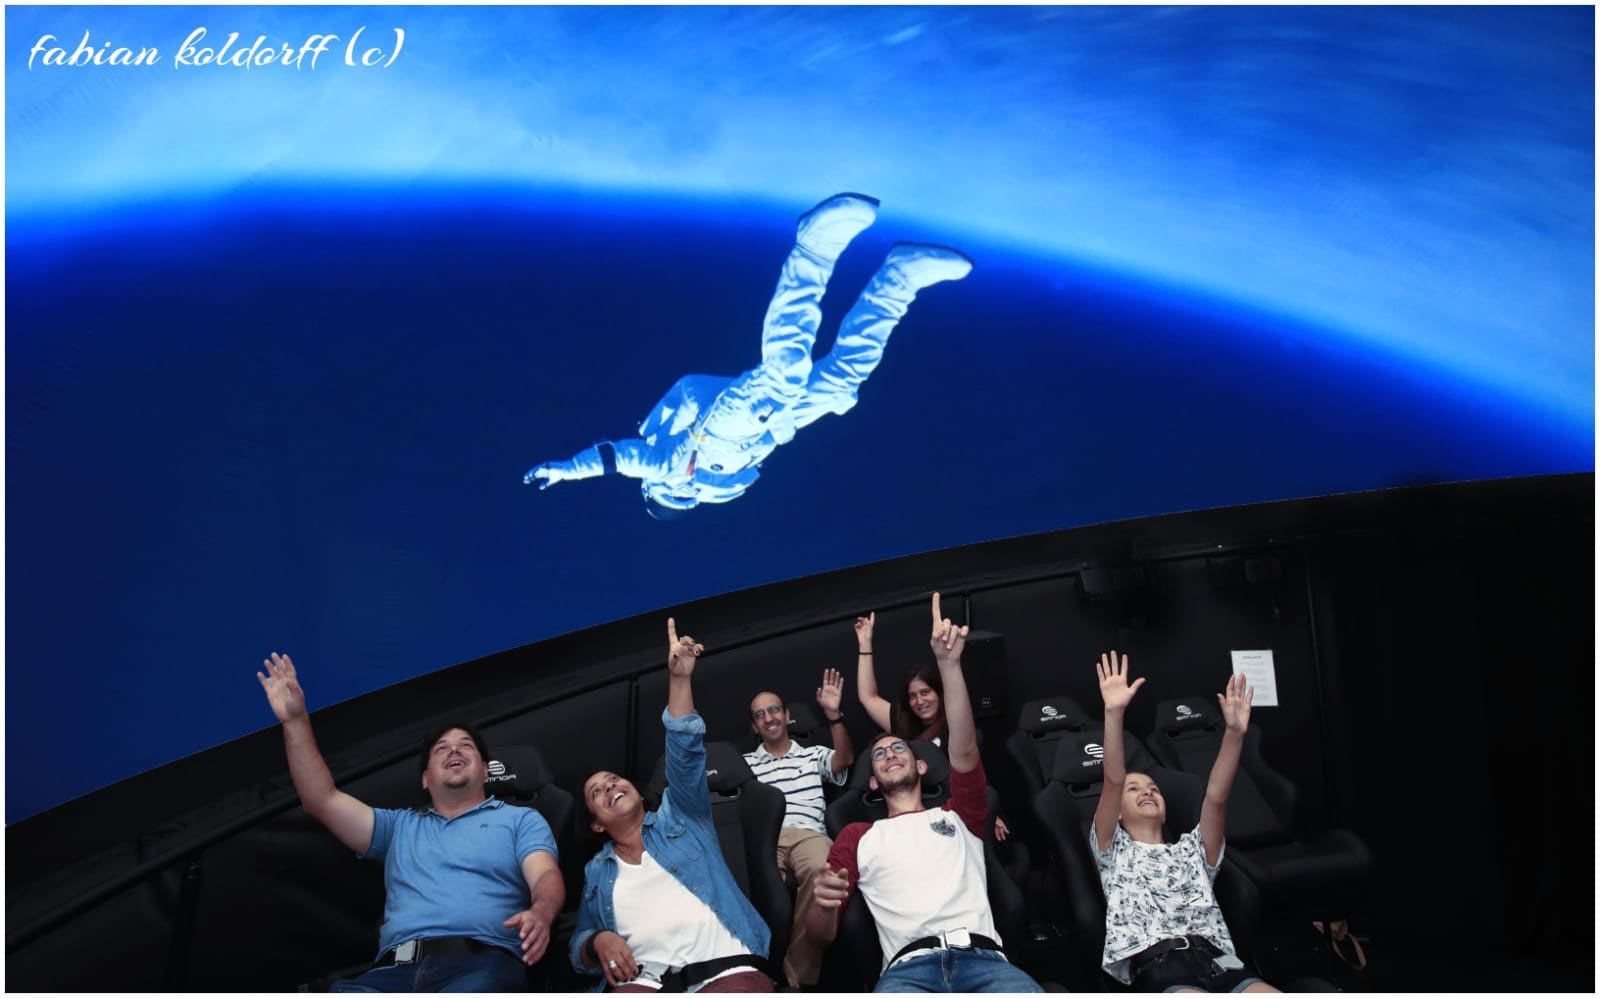 אנשים מצביעים על דמות של אסטרונאוט "מרחף" מעליהם בסרט